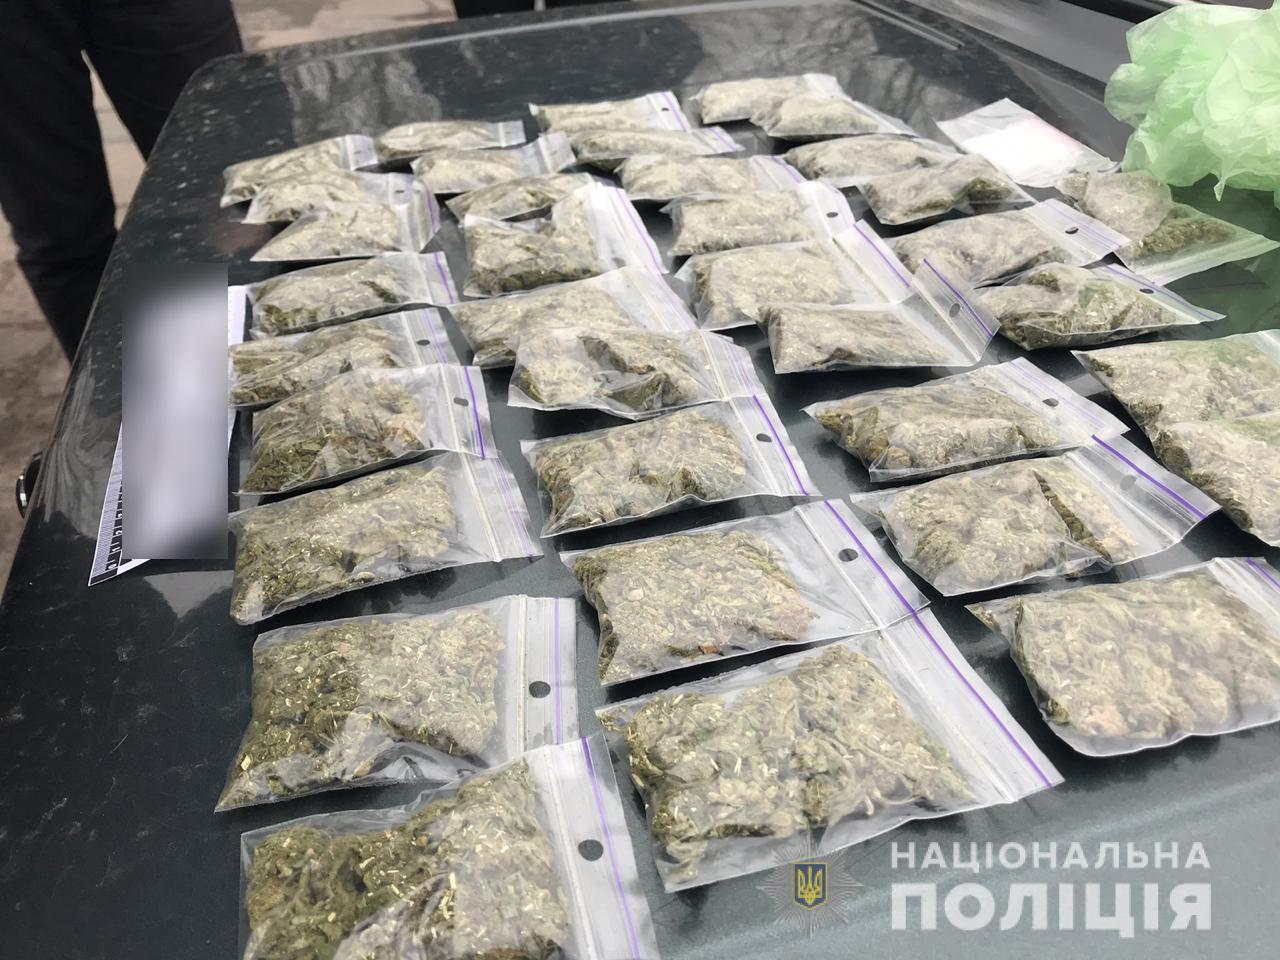 Цена 1 грамма марихуаны украина как качать через браузер тор торрент hydra